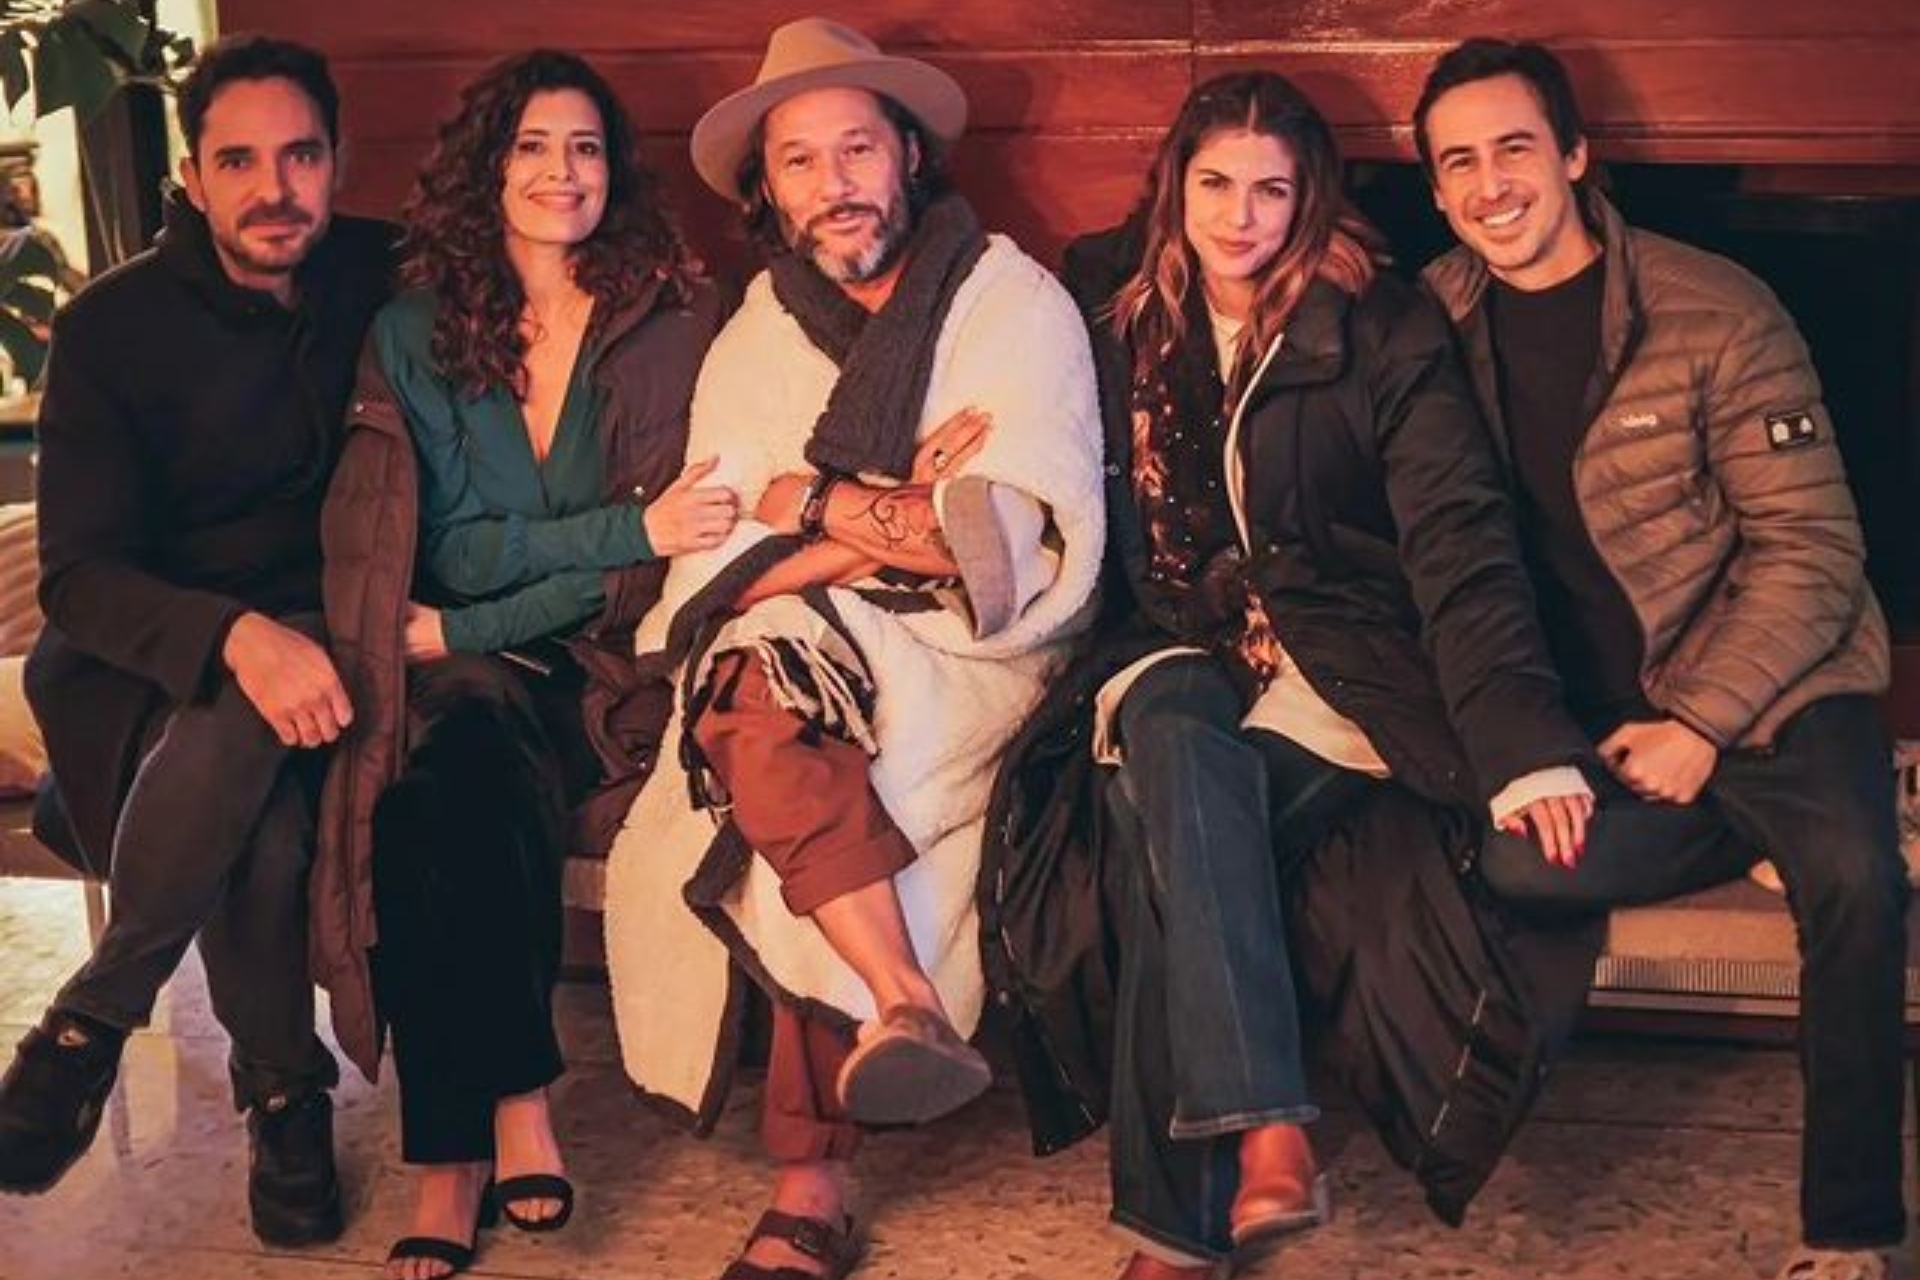 El actor Manolo Cardona, Cepeda, Torres, Stephanie y el director de Bruno Ascenzo: el equipo de Dime lo que quieras (Imágenes: Instagram)